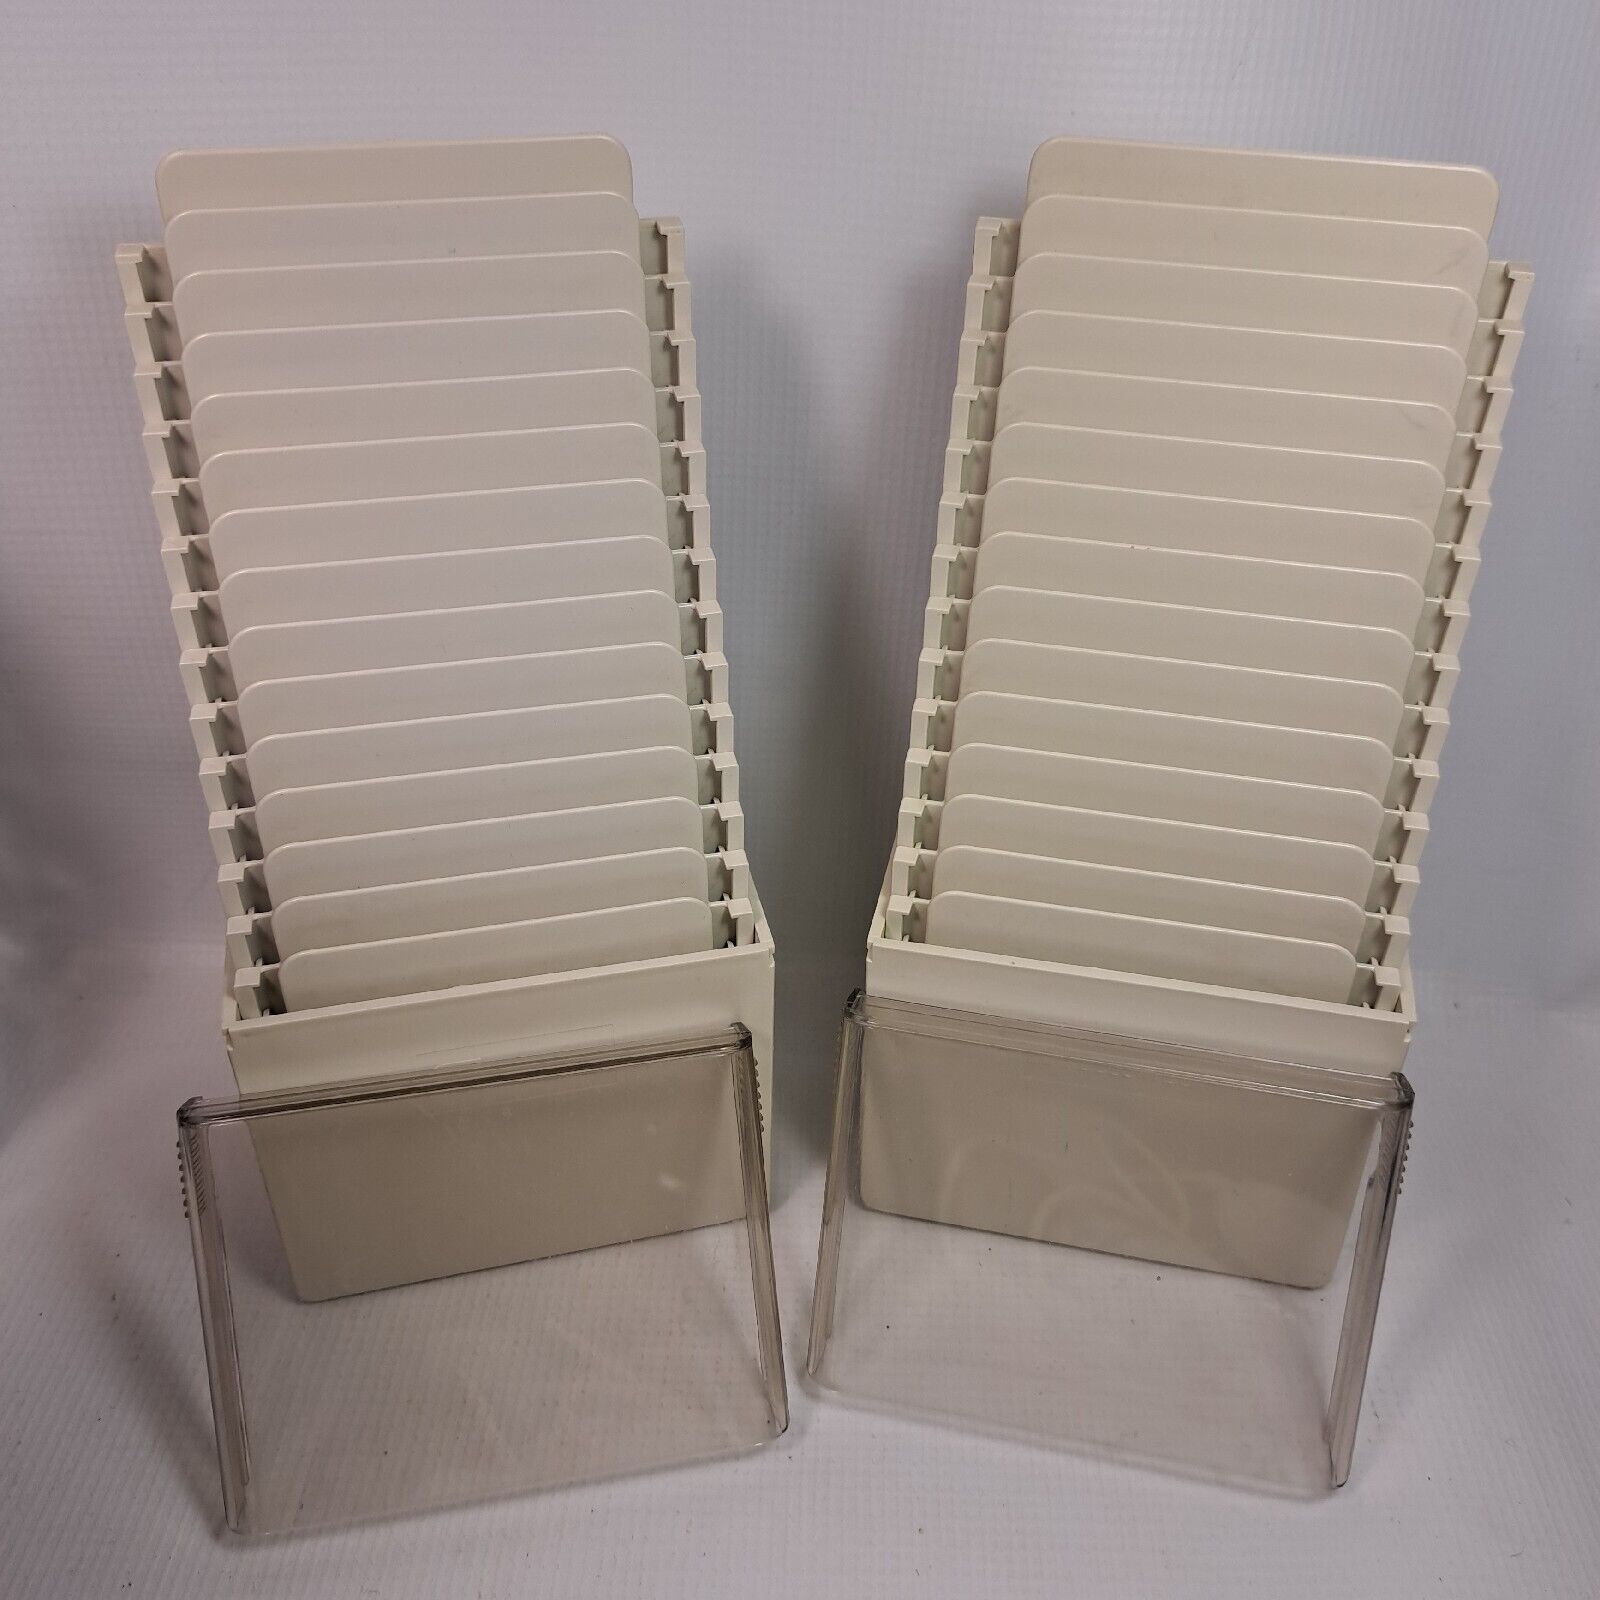 2 Vintage Fellowes Step Cubes 3.5 Diskette File Holder #95350 Beige 15 Slot Case